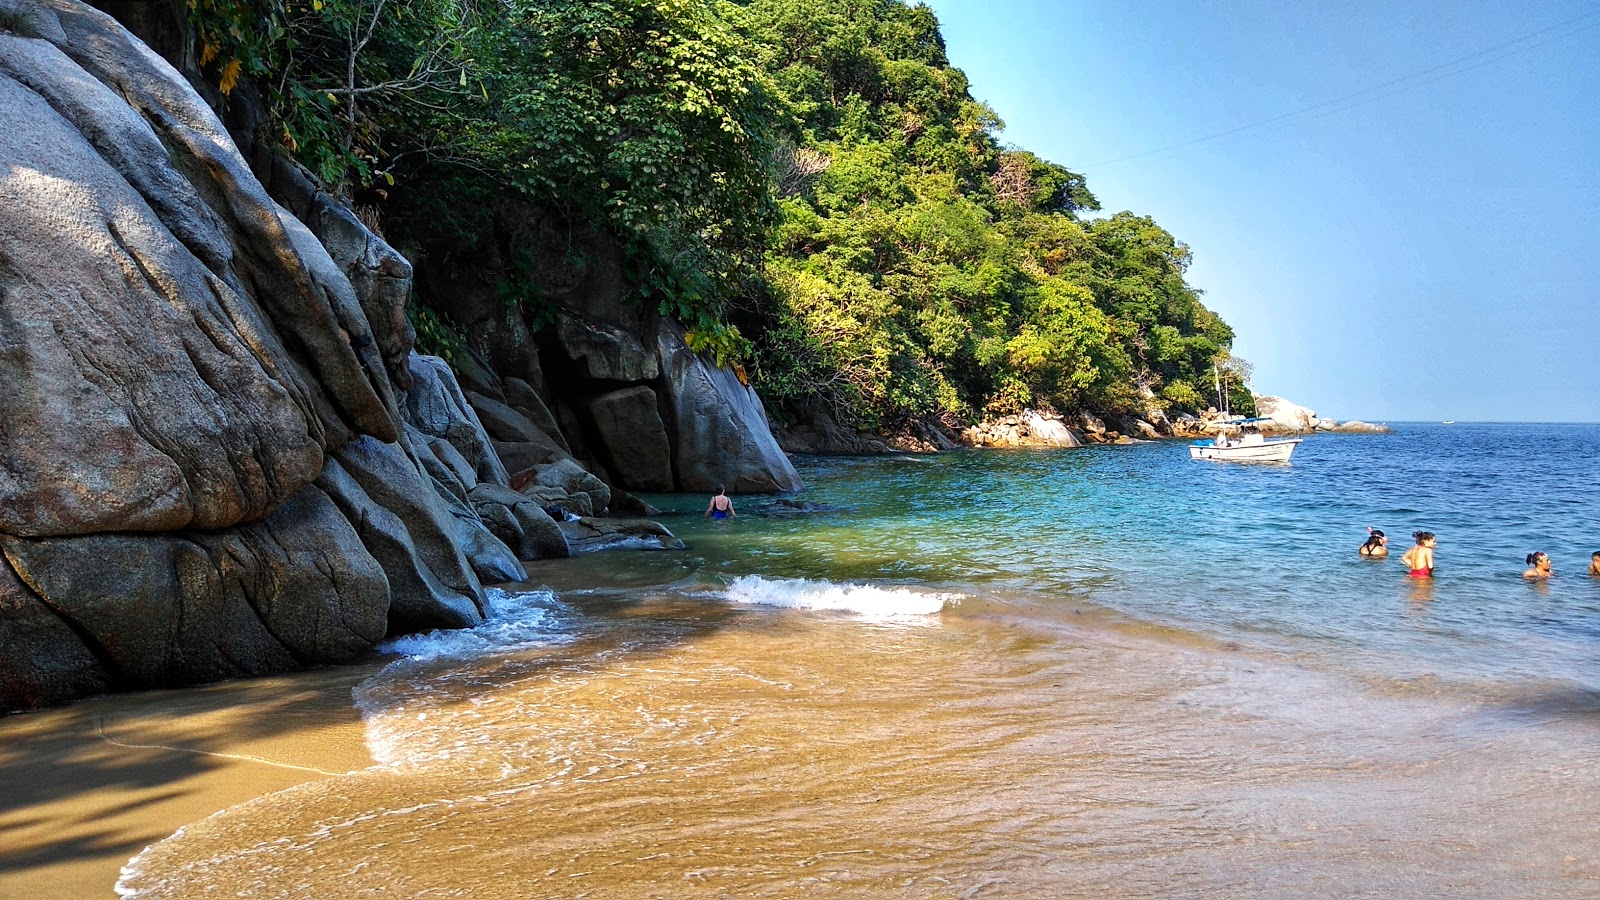 Foto di Colomitos beach ubicato in zona naturale